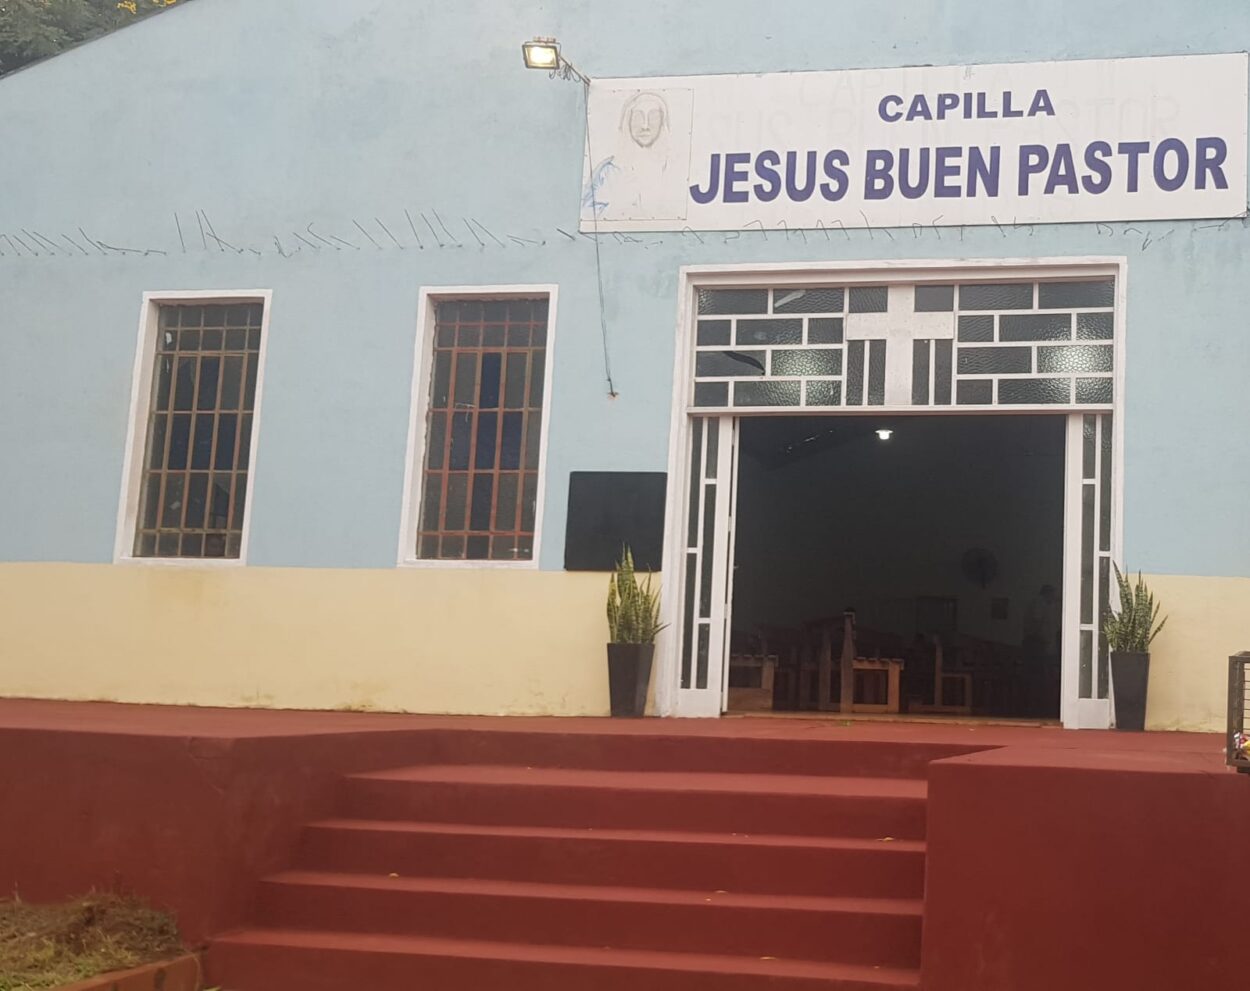 Capilla “Jesús Buen Pastor” celebrará su fiesta patronal este domingo 21 imagen-60